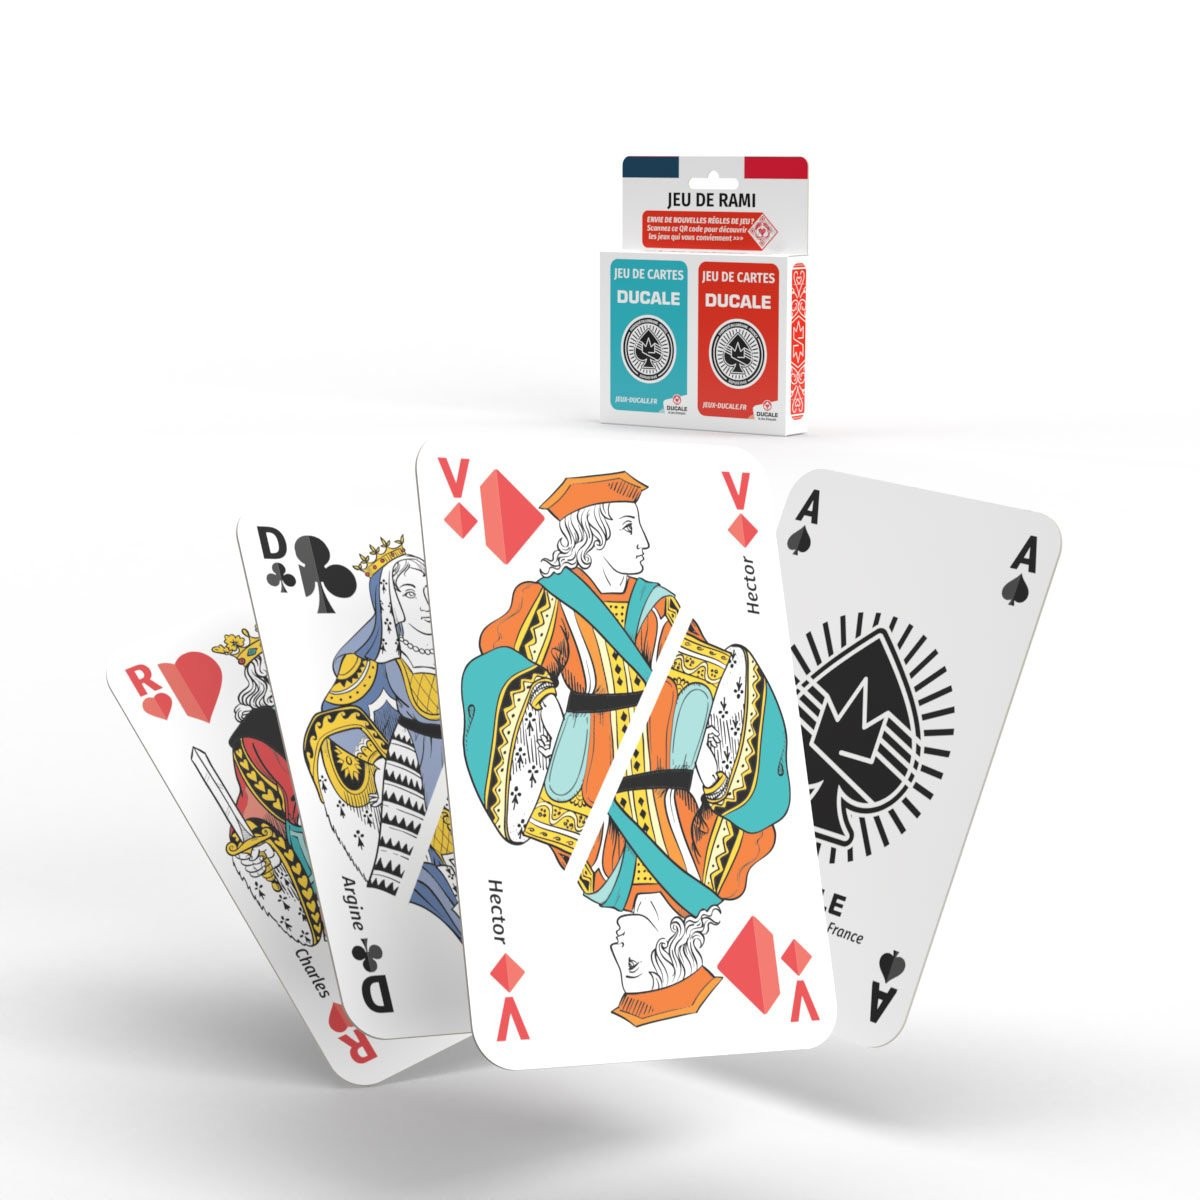 TAPIS DE JEU + CARTES - Ducale le jeu français - feutre vert - 40x60 cm -  2 jeux de cartes